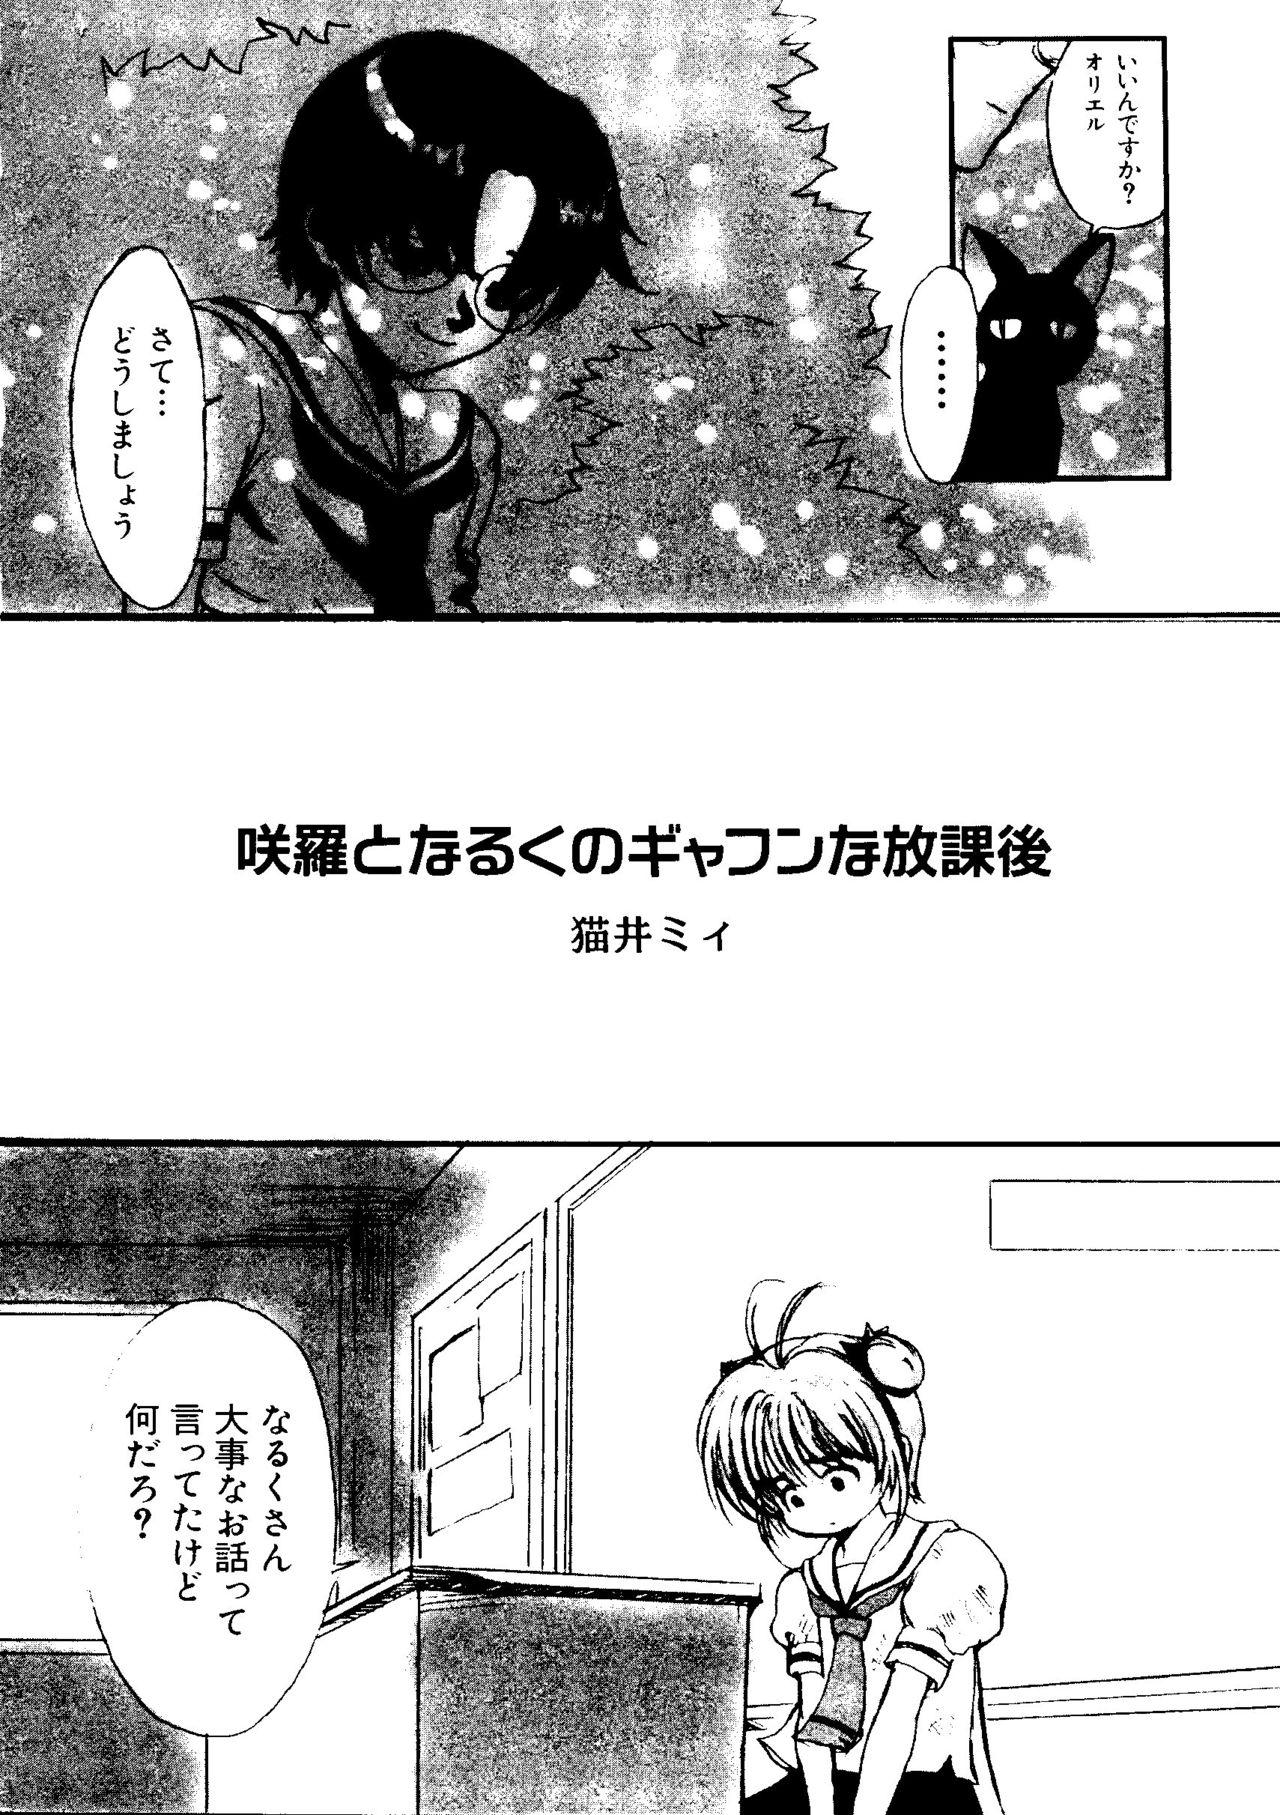 Deepthroat Love Chara Taizen No. 5 - Cardcaptor sakura Ojamajo doremi Digimon adventure Ecoko Azuki chan Blowing - Page 7